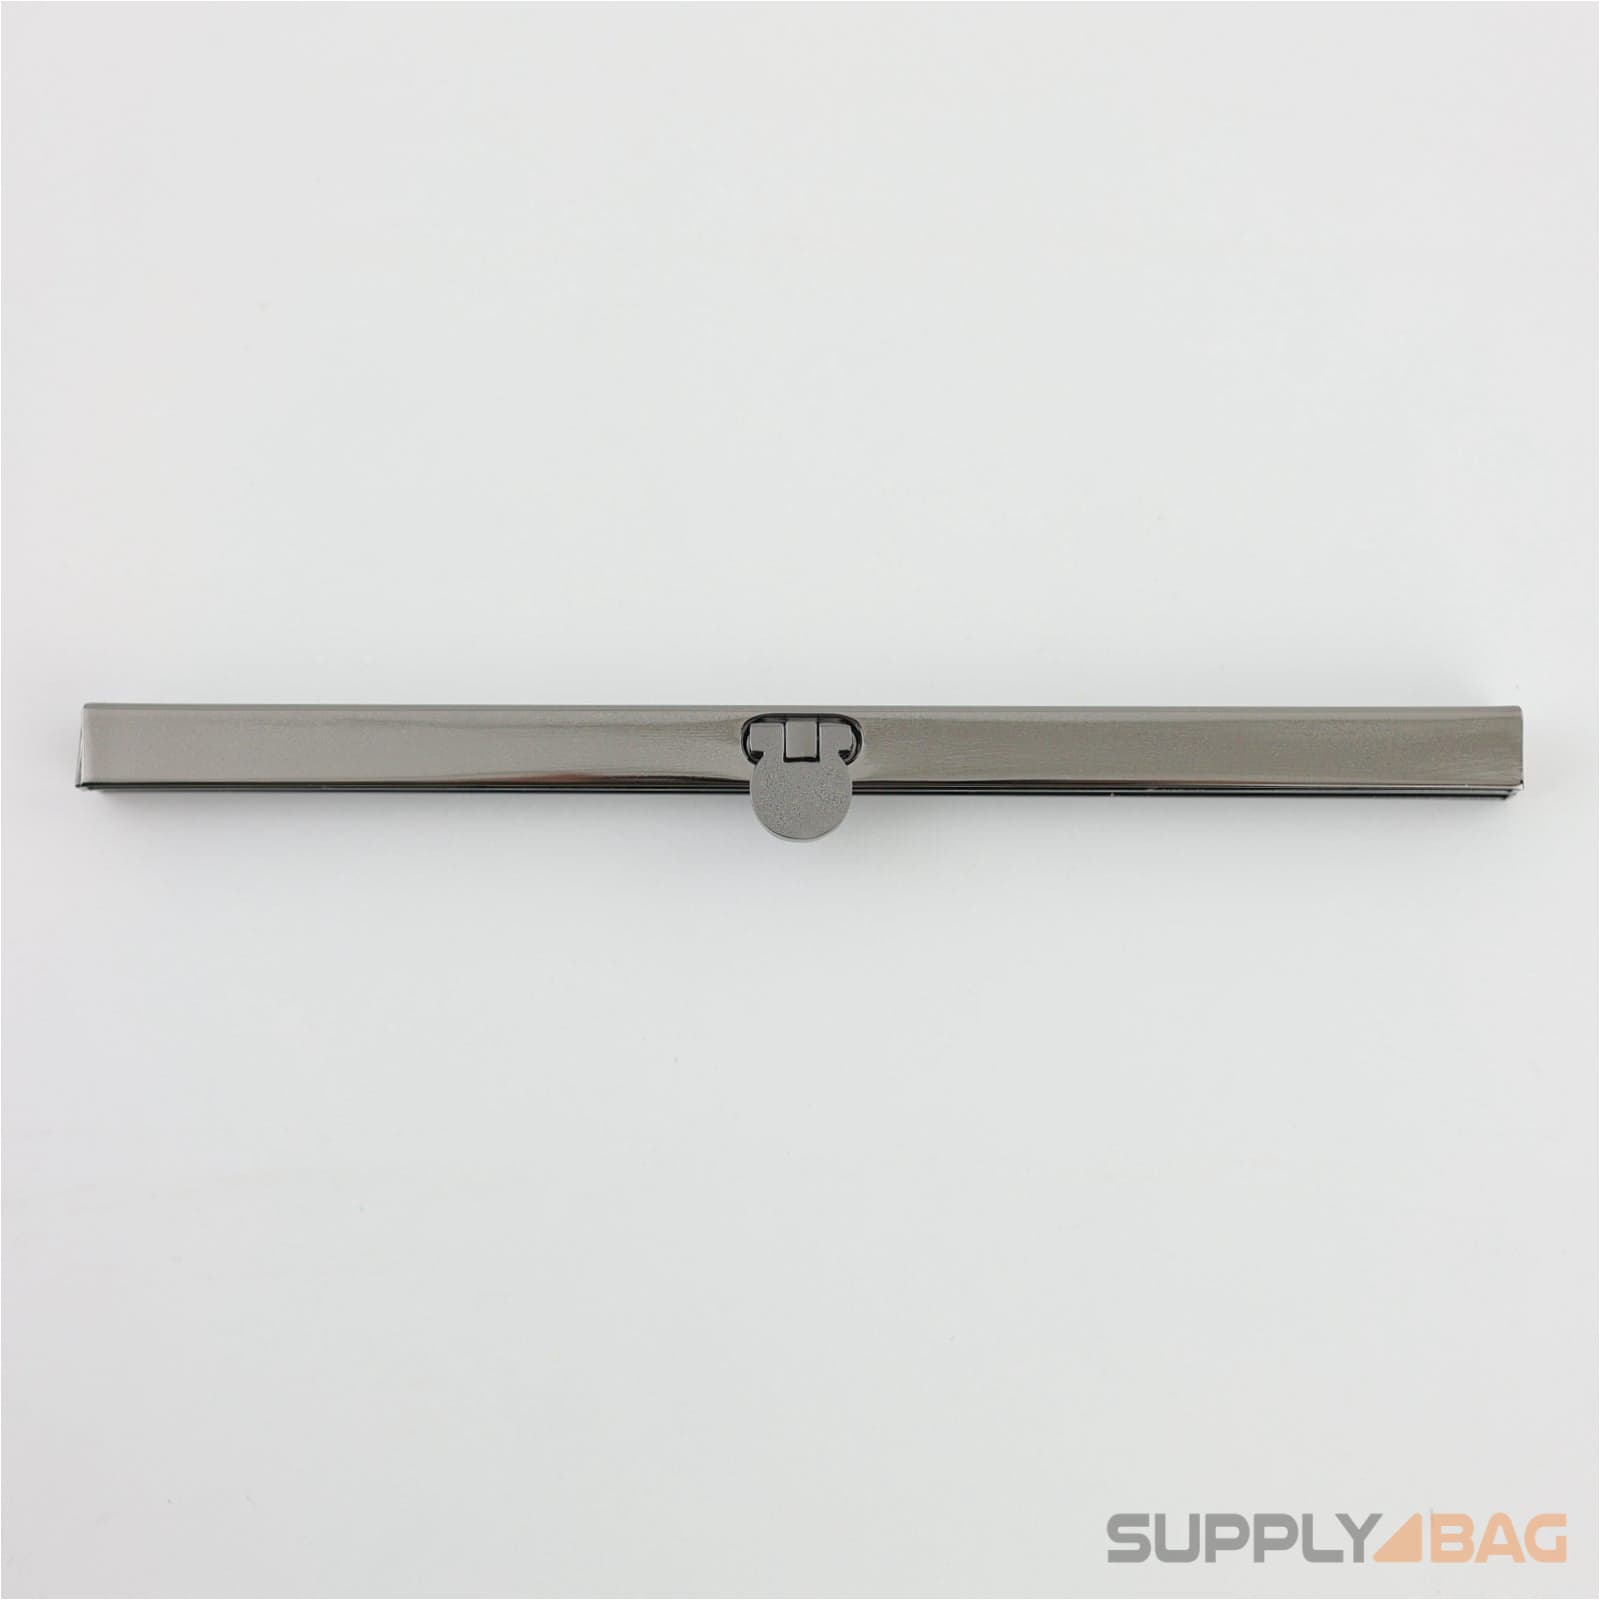 7 1/2 inch Gunmetal Wallet Purse Frame for Bag Making